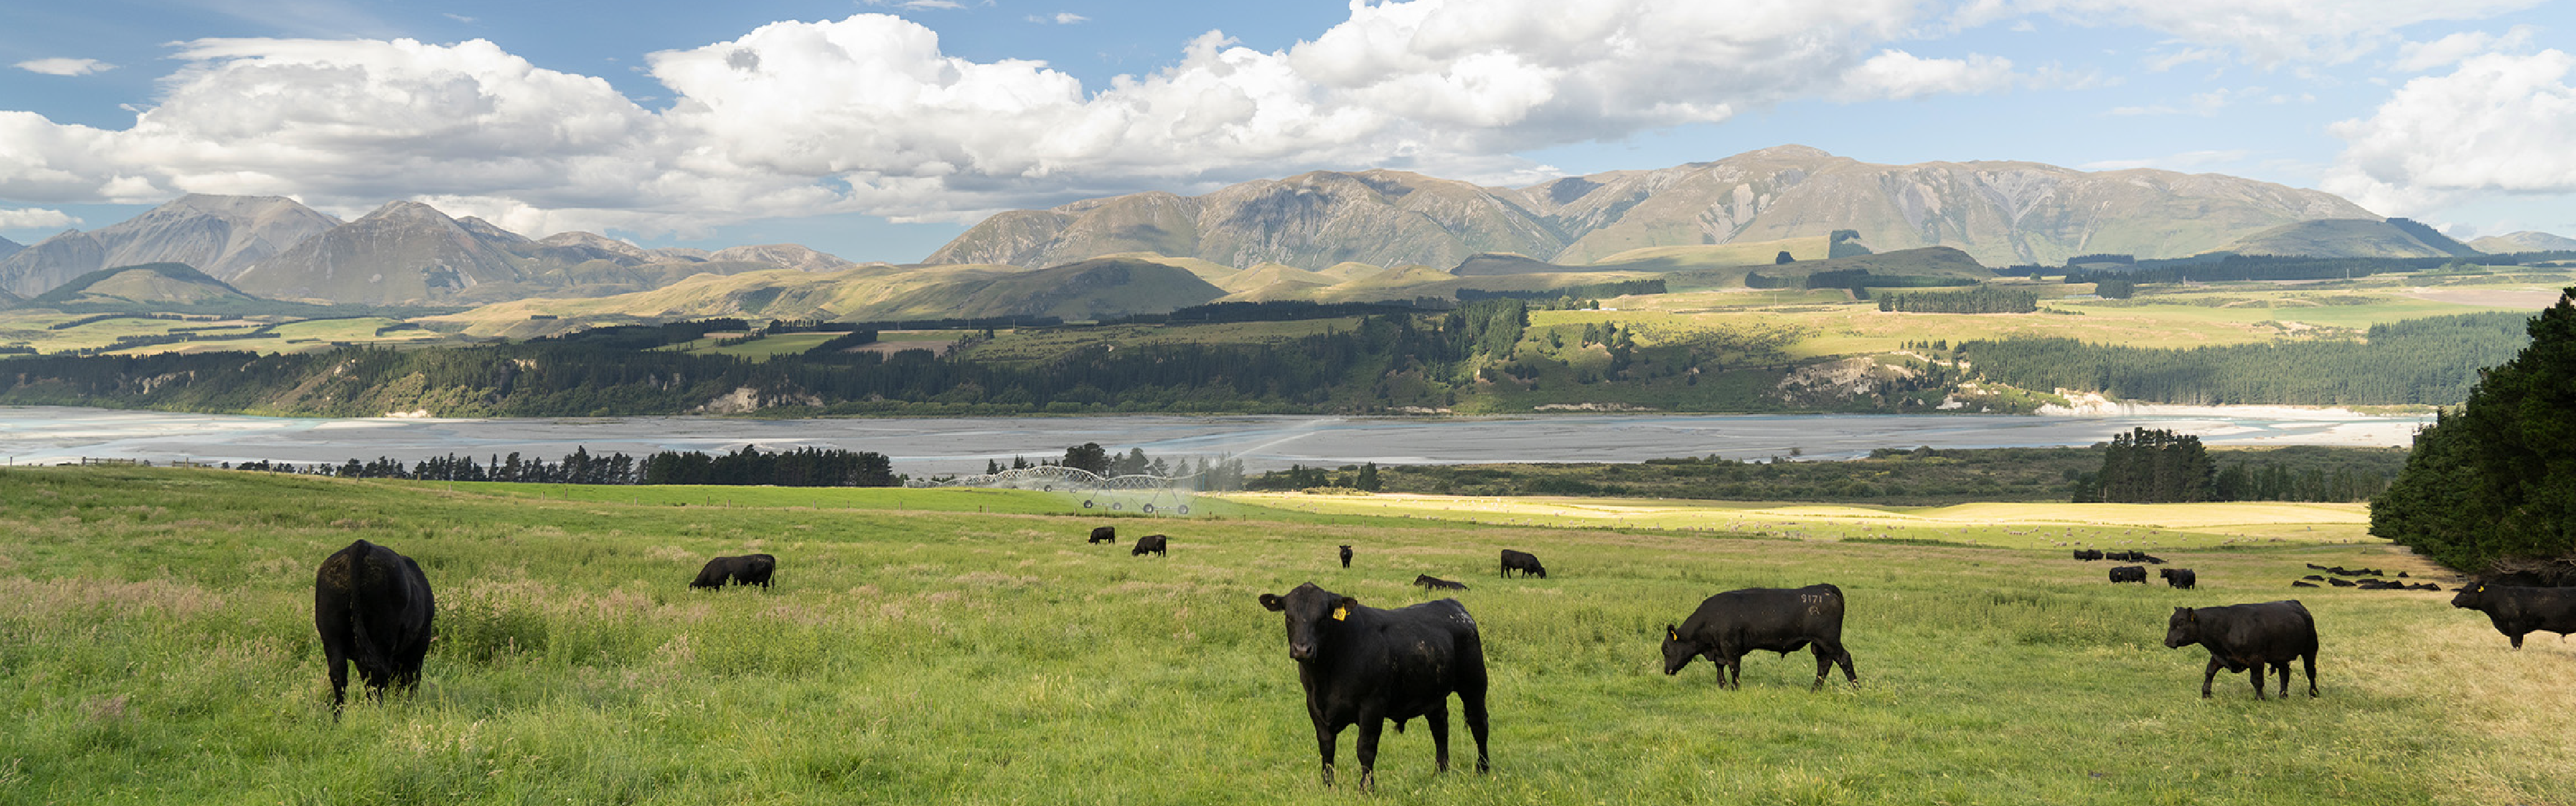 Cows grazing in scenic field